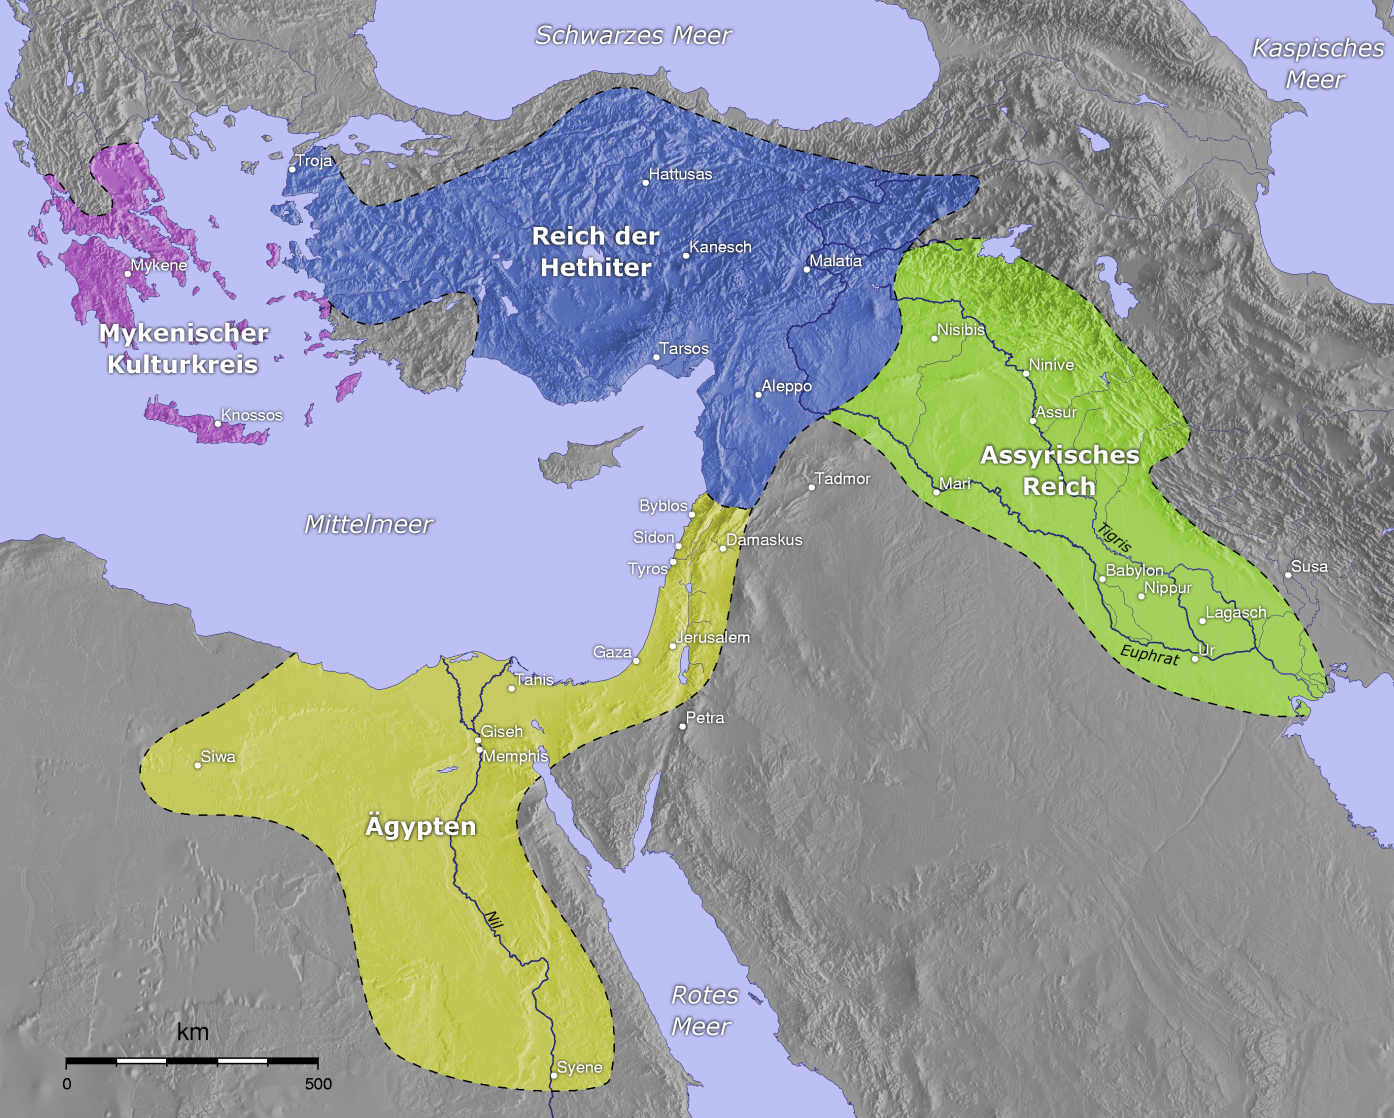 Đế chế Hittite ra đời và sụp đổ như thế nào? - Ảnh 2.